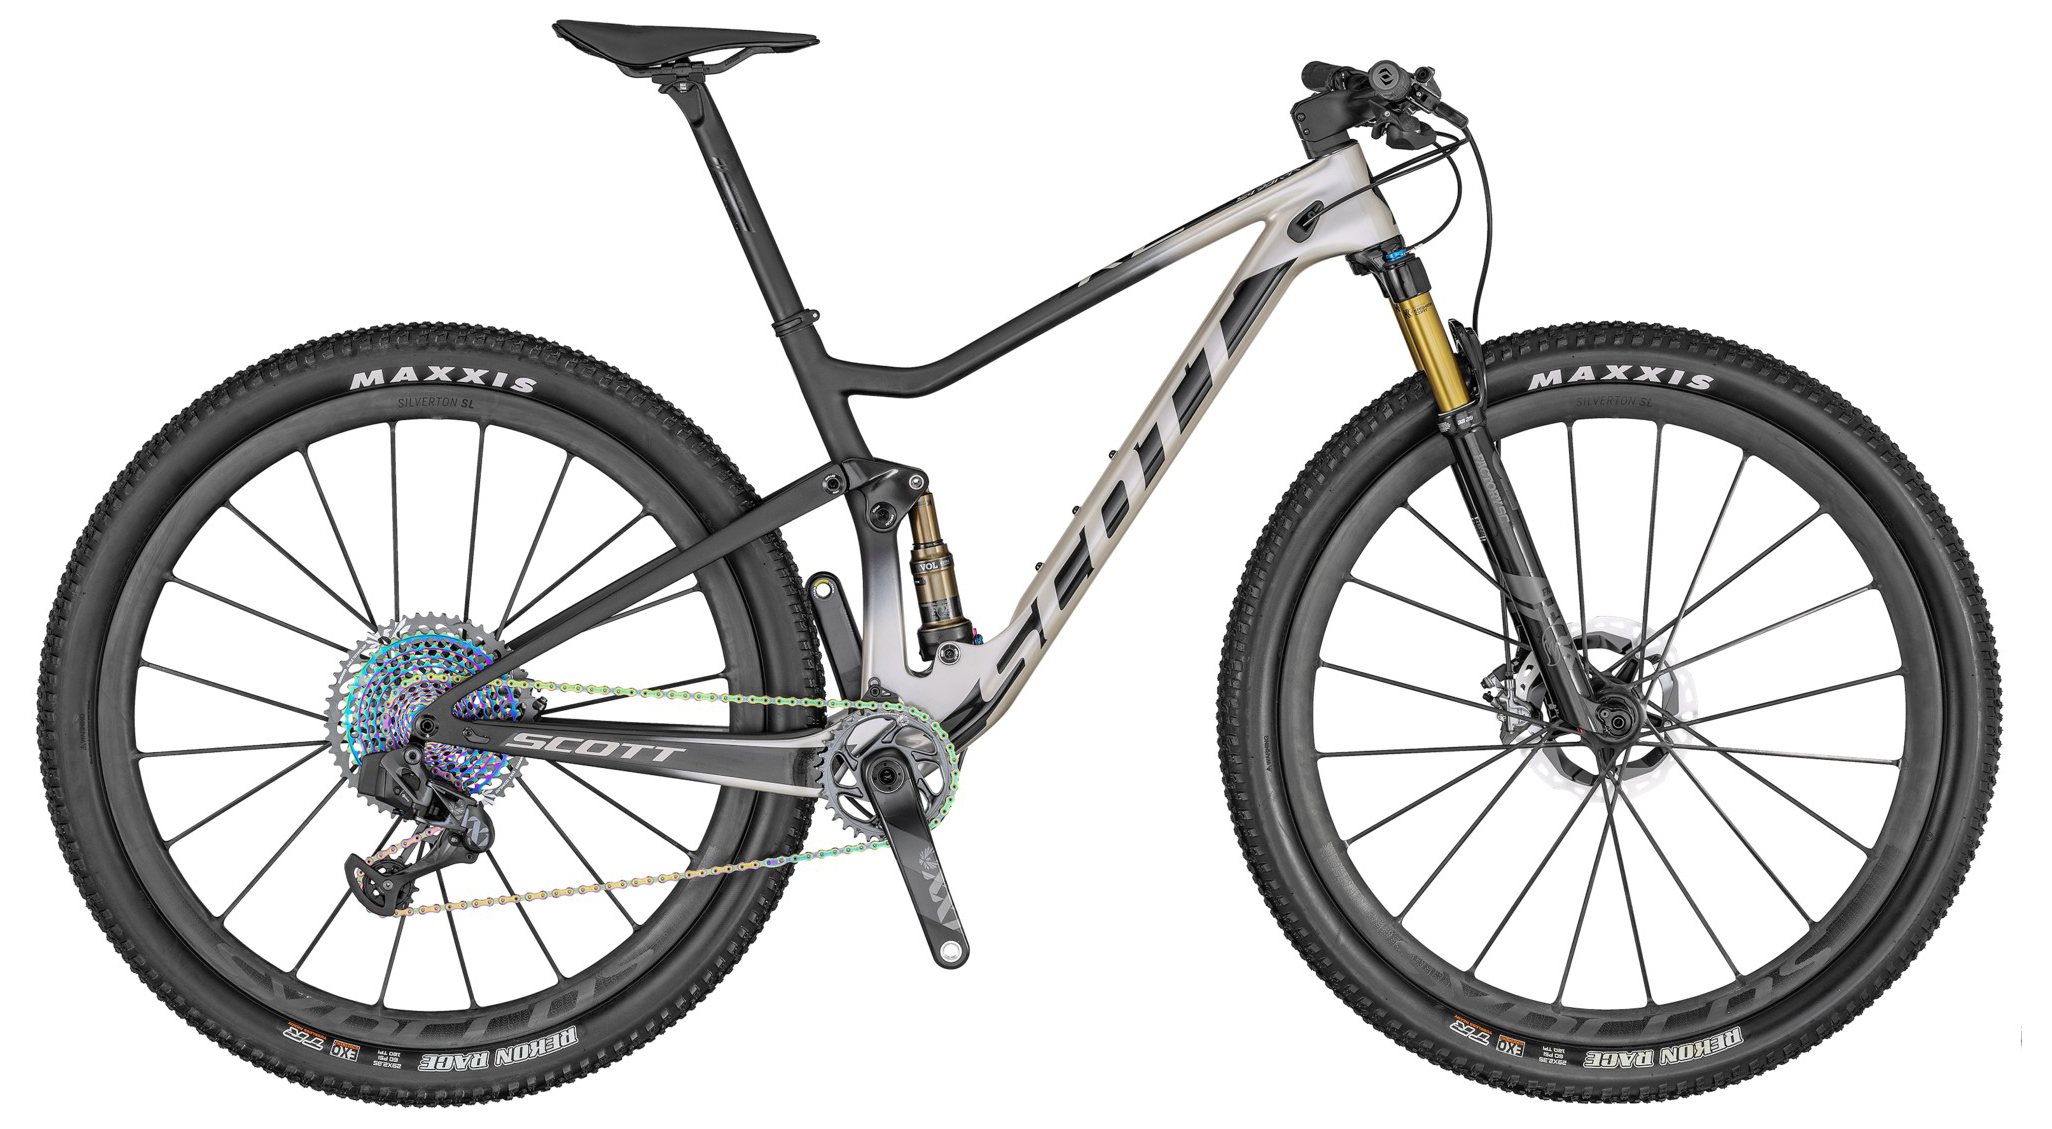  Отзывы о Двухподвесном велосипеде Scott Spark RC 900 SL AXS 2020